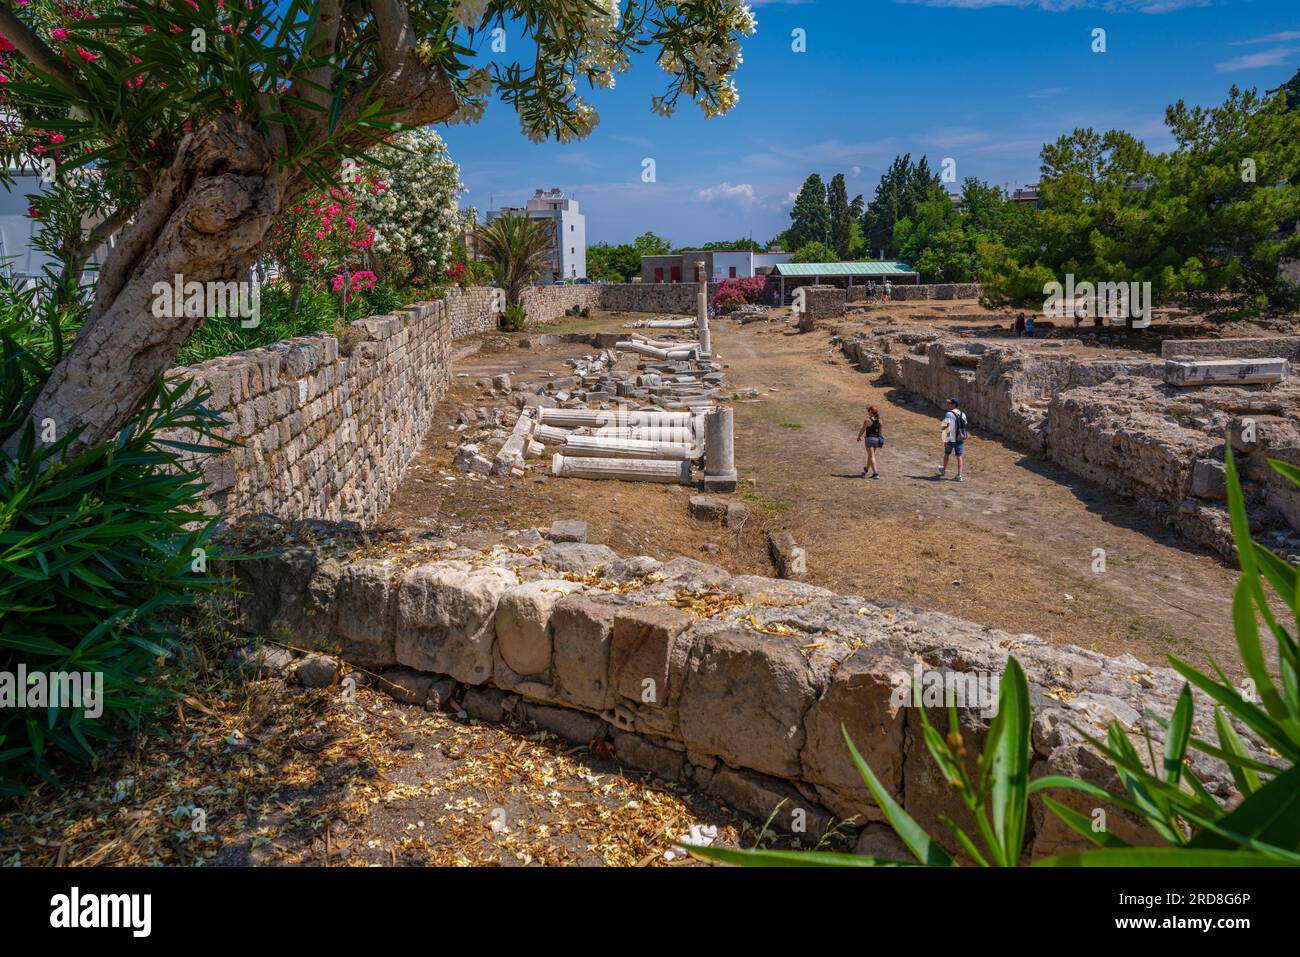 Vue de l'ancienne Agora et des arbres fleuris, ville de Kos, Kos, Dodécanèse, îles grecques, Grèce, Europe Banque D'Images